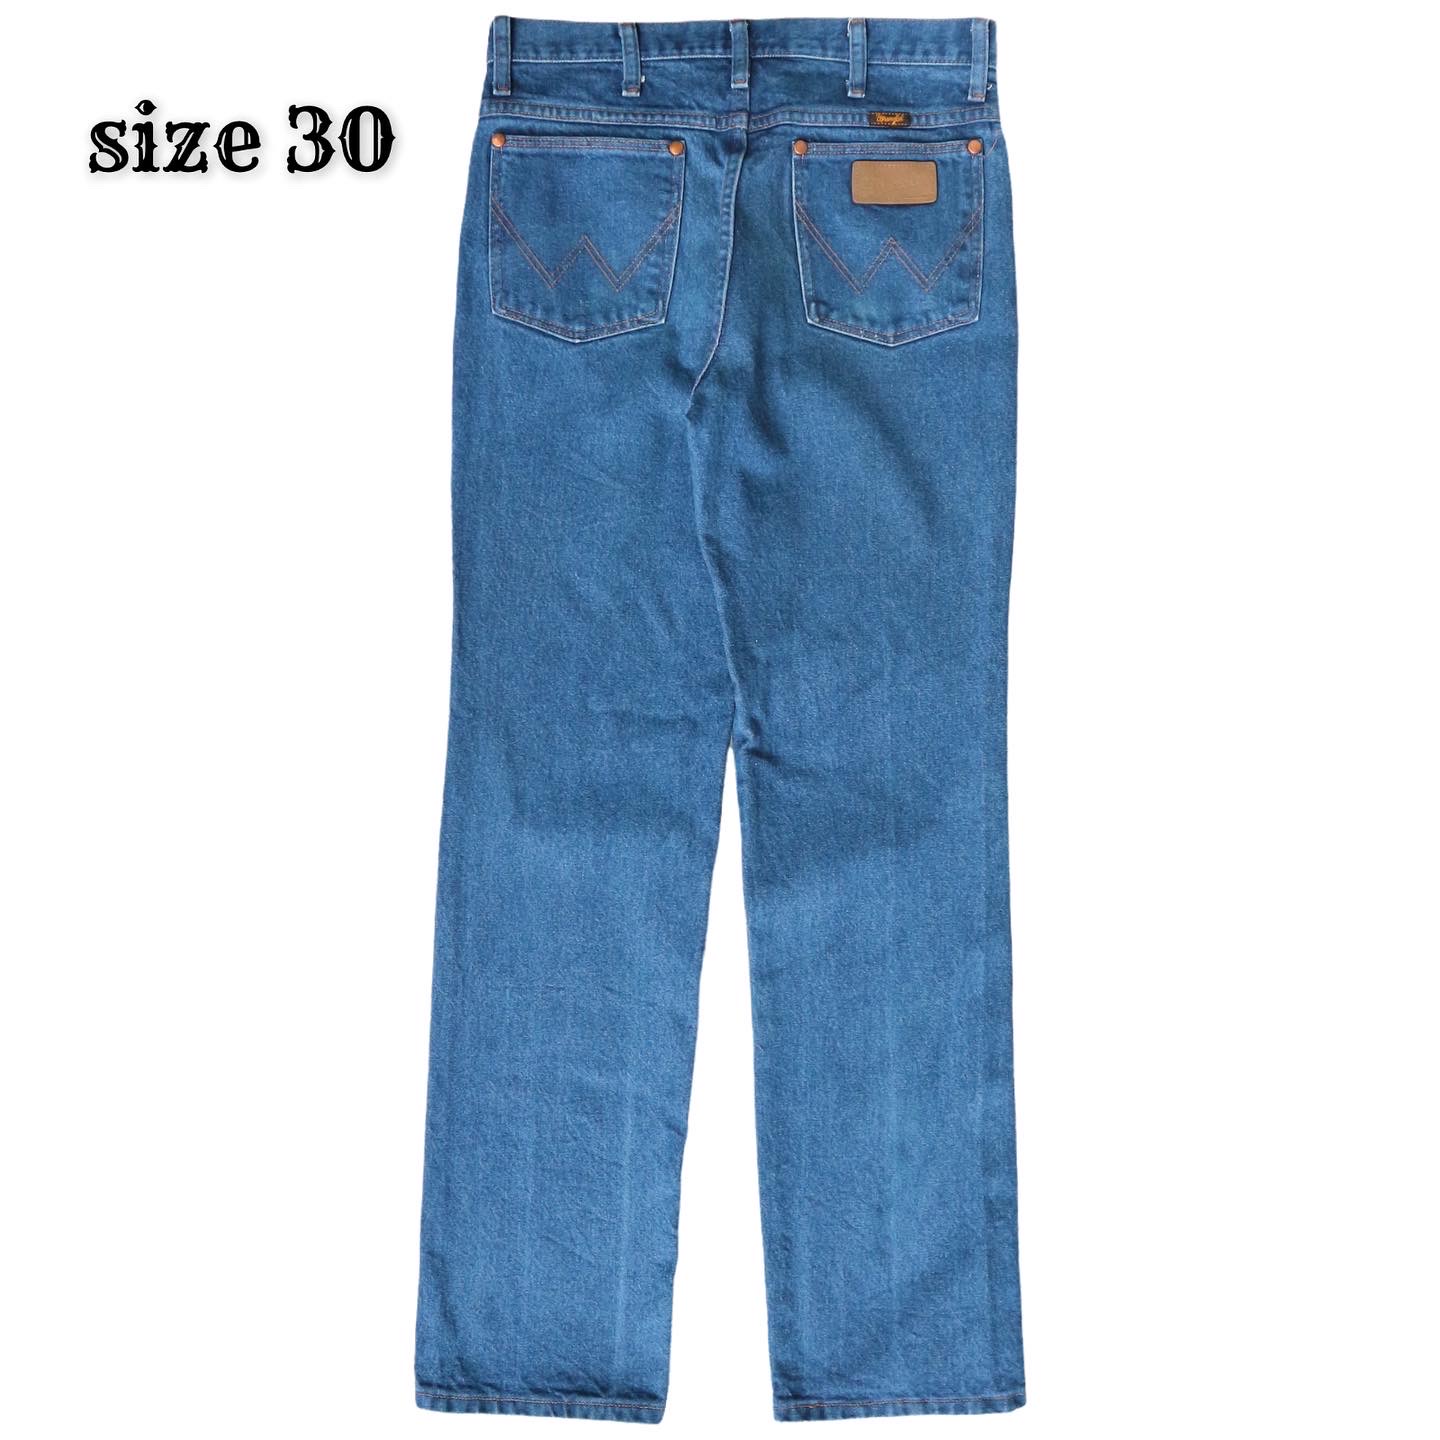 Wrangler Jeans Size 30 denimister